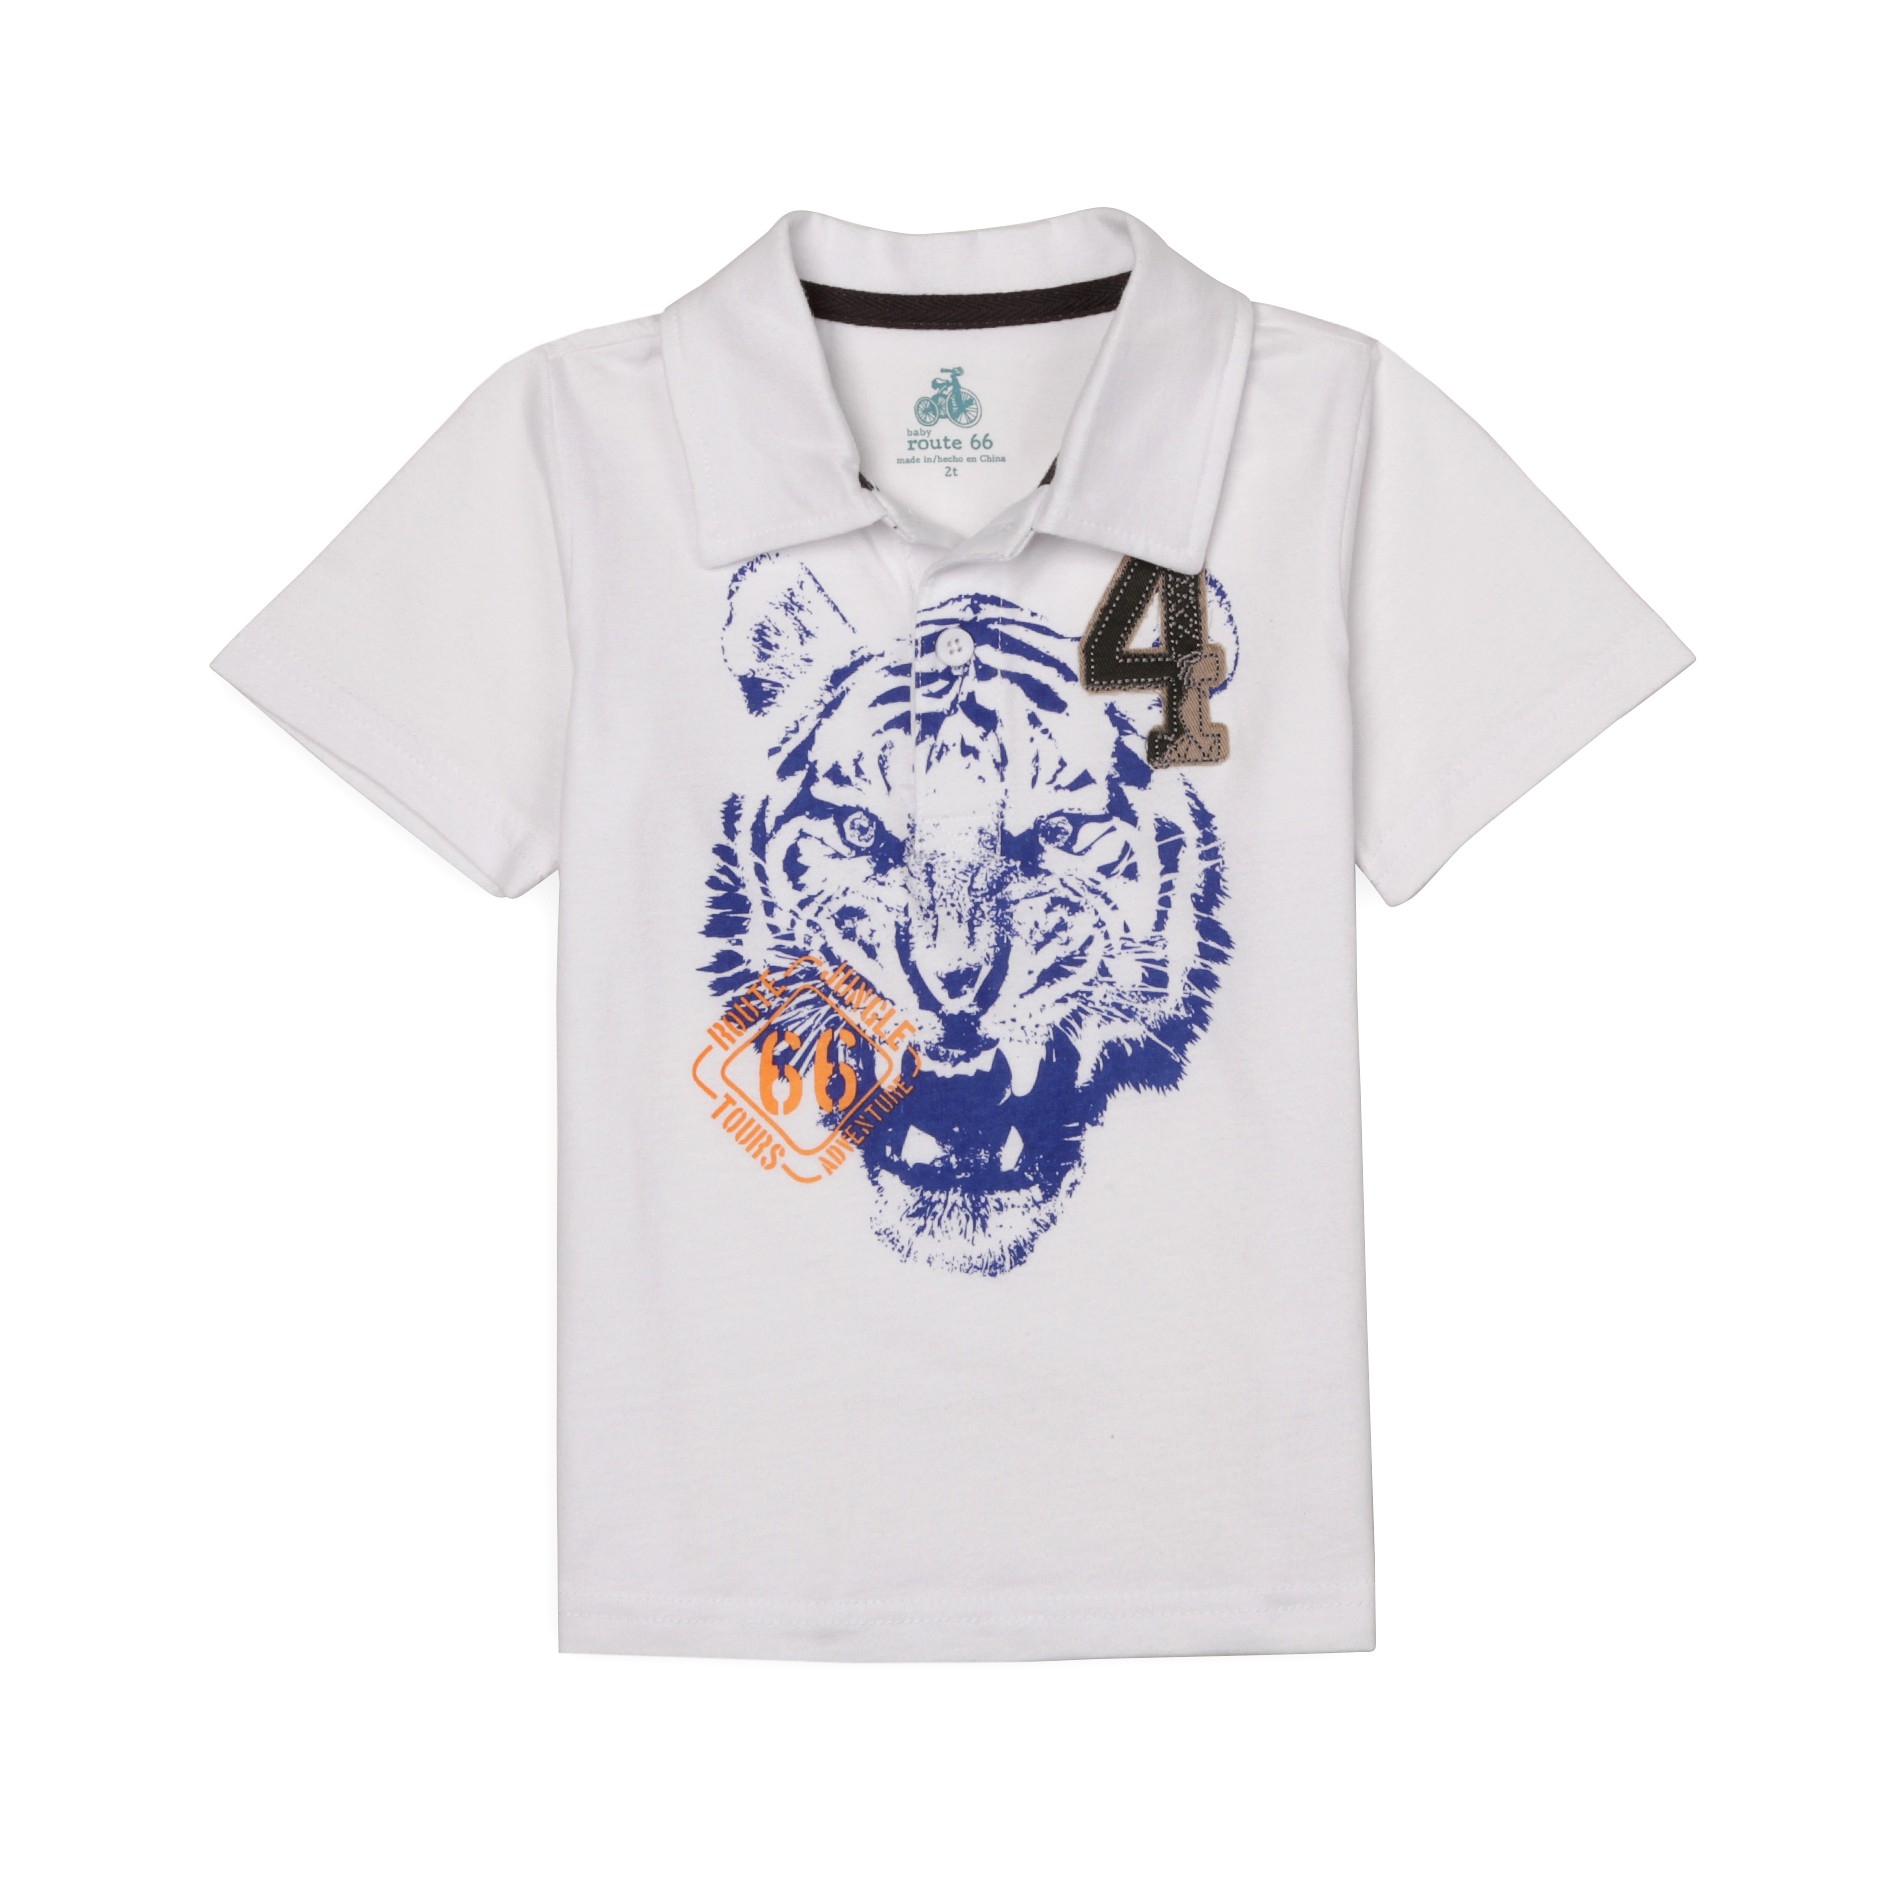 Toddler Boy's Graphic Polo Shirt - Tiger